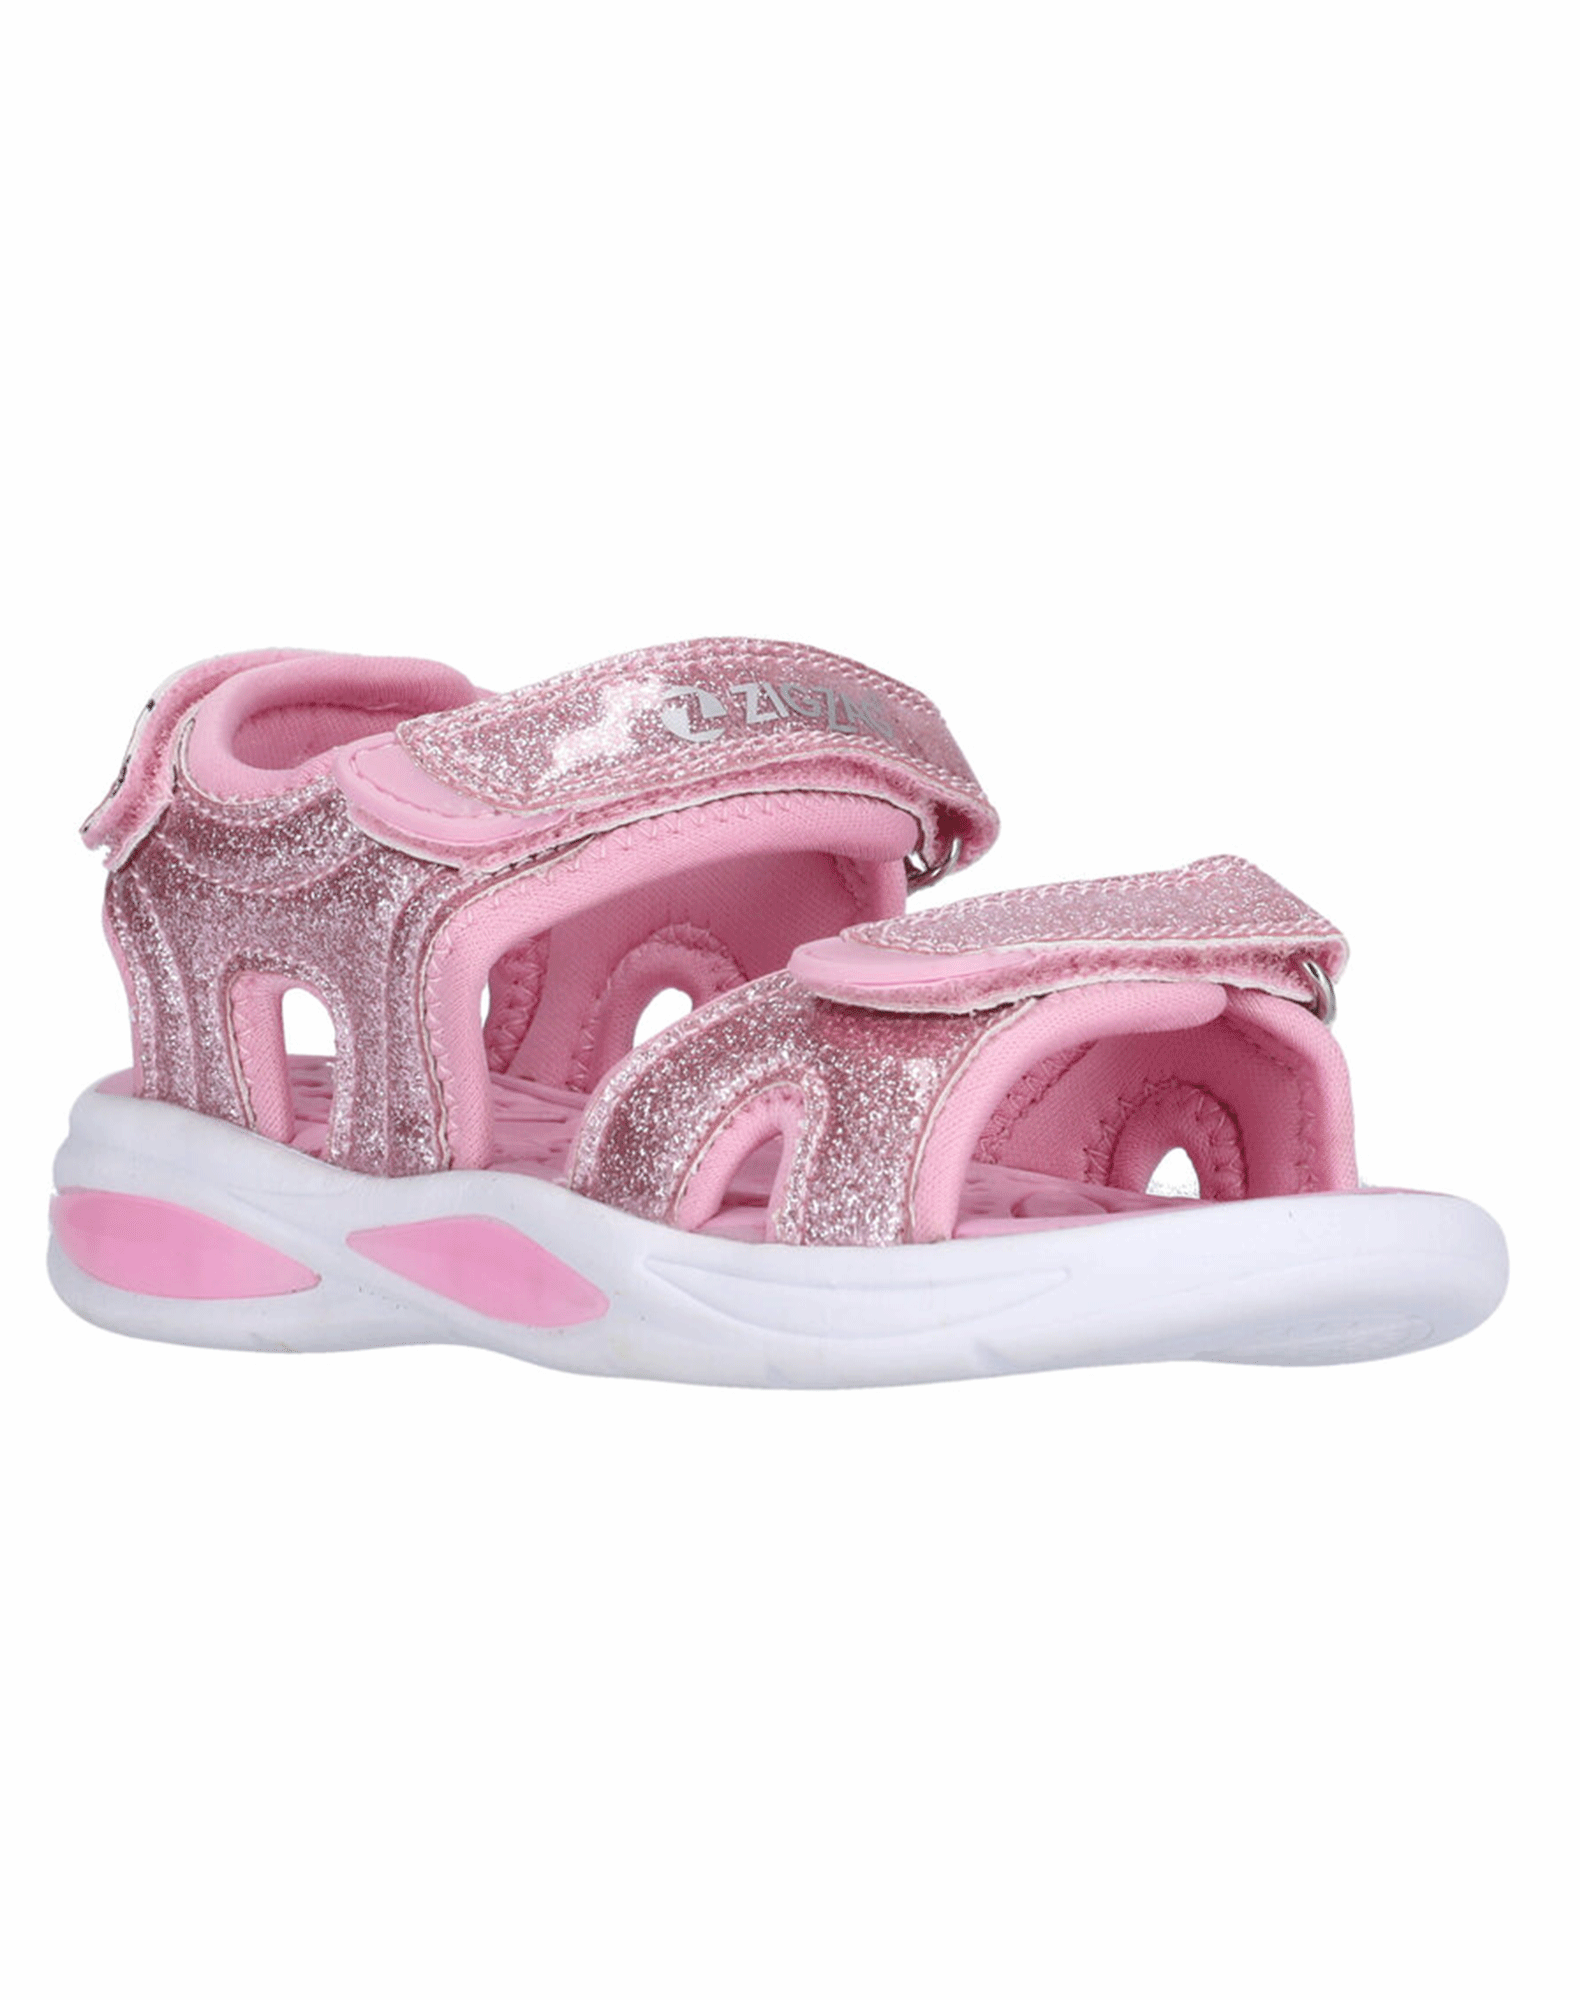 Invitere Modish omhyggeligt Køb Zig Zag Flouer sandaler til pige i lyserød